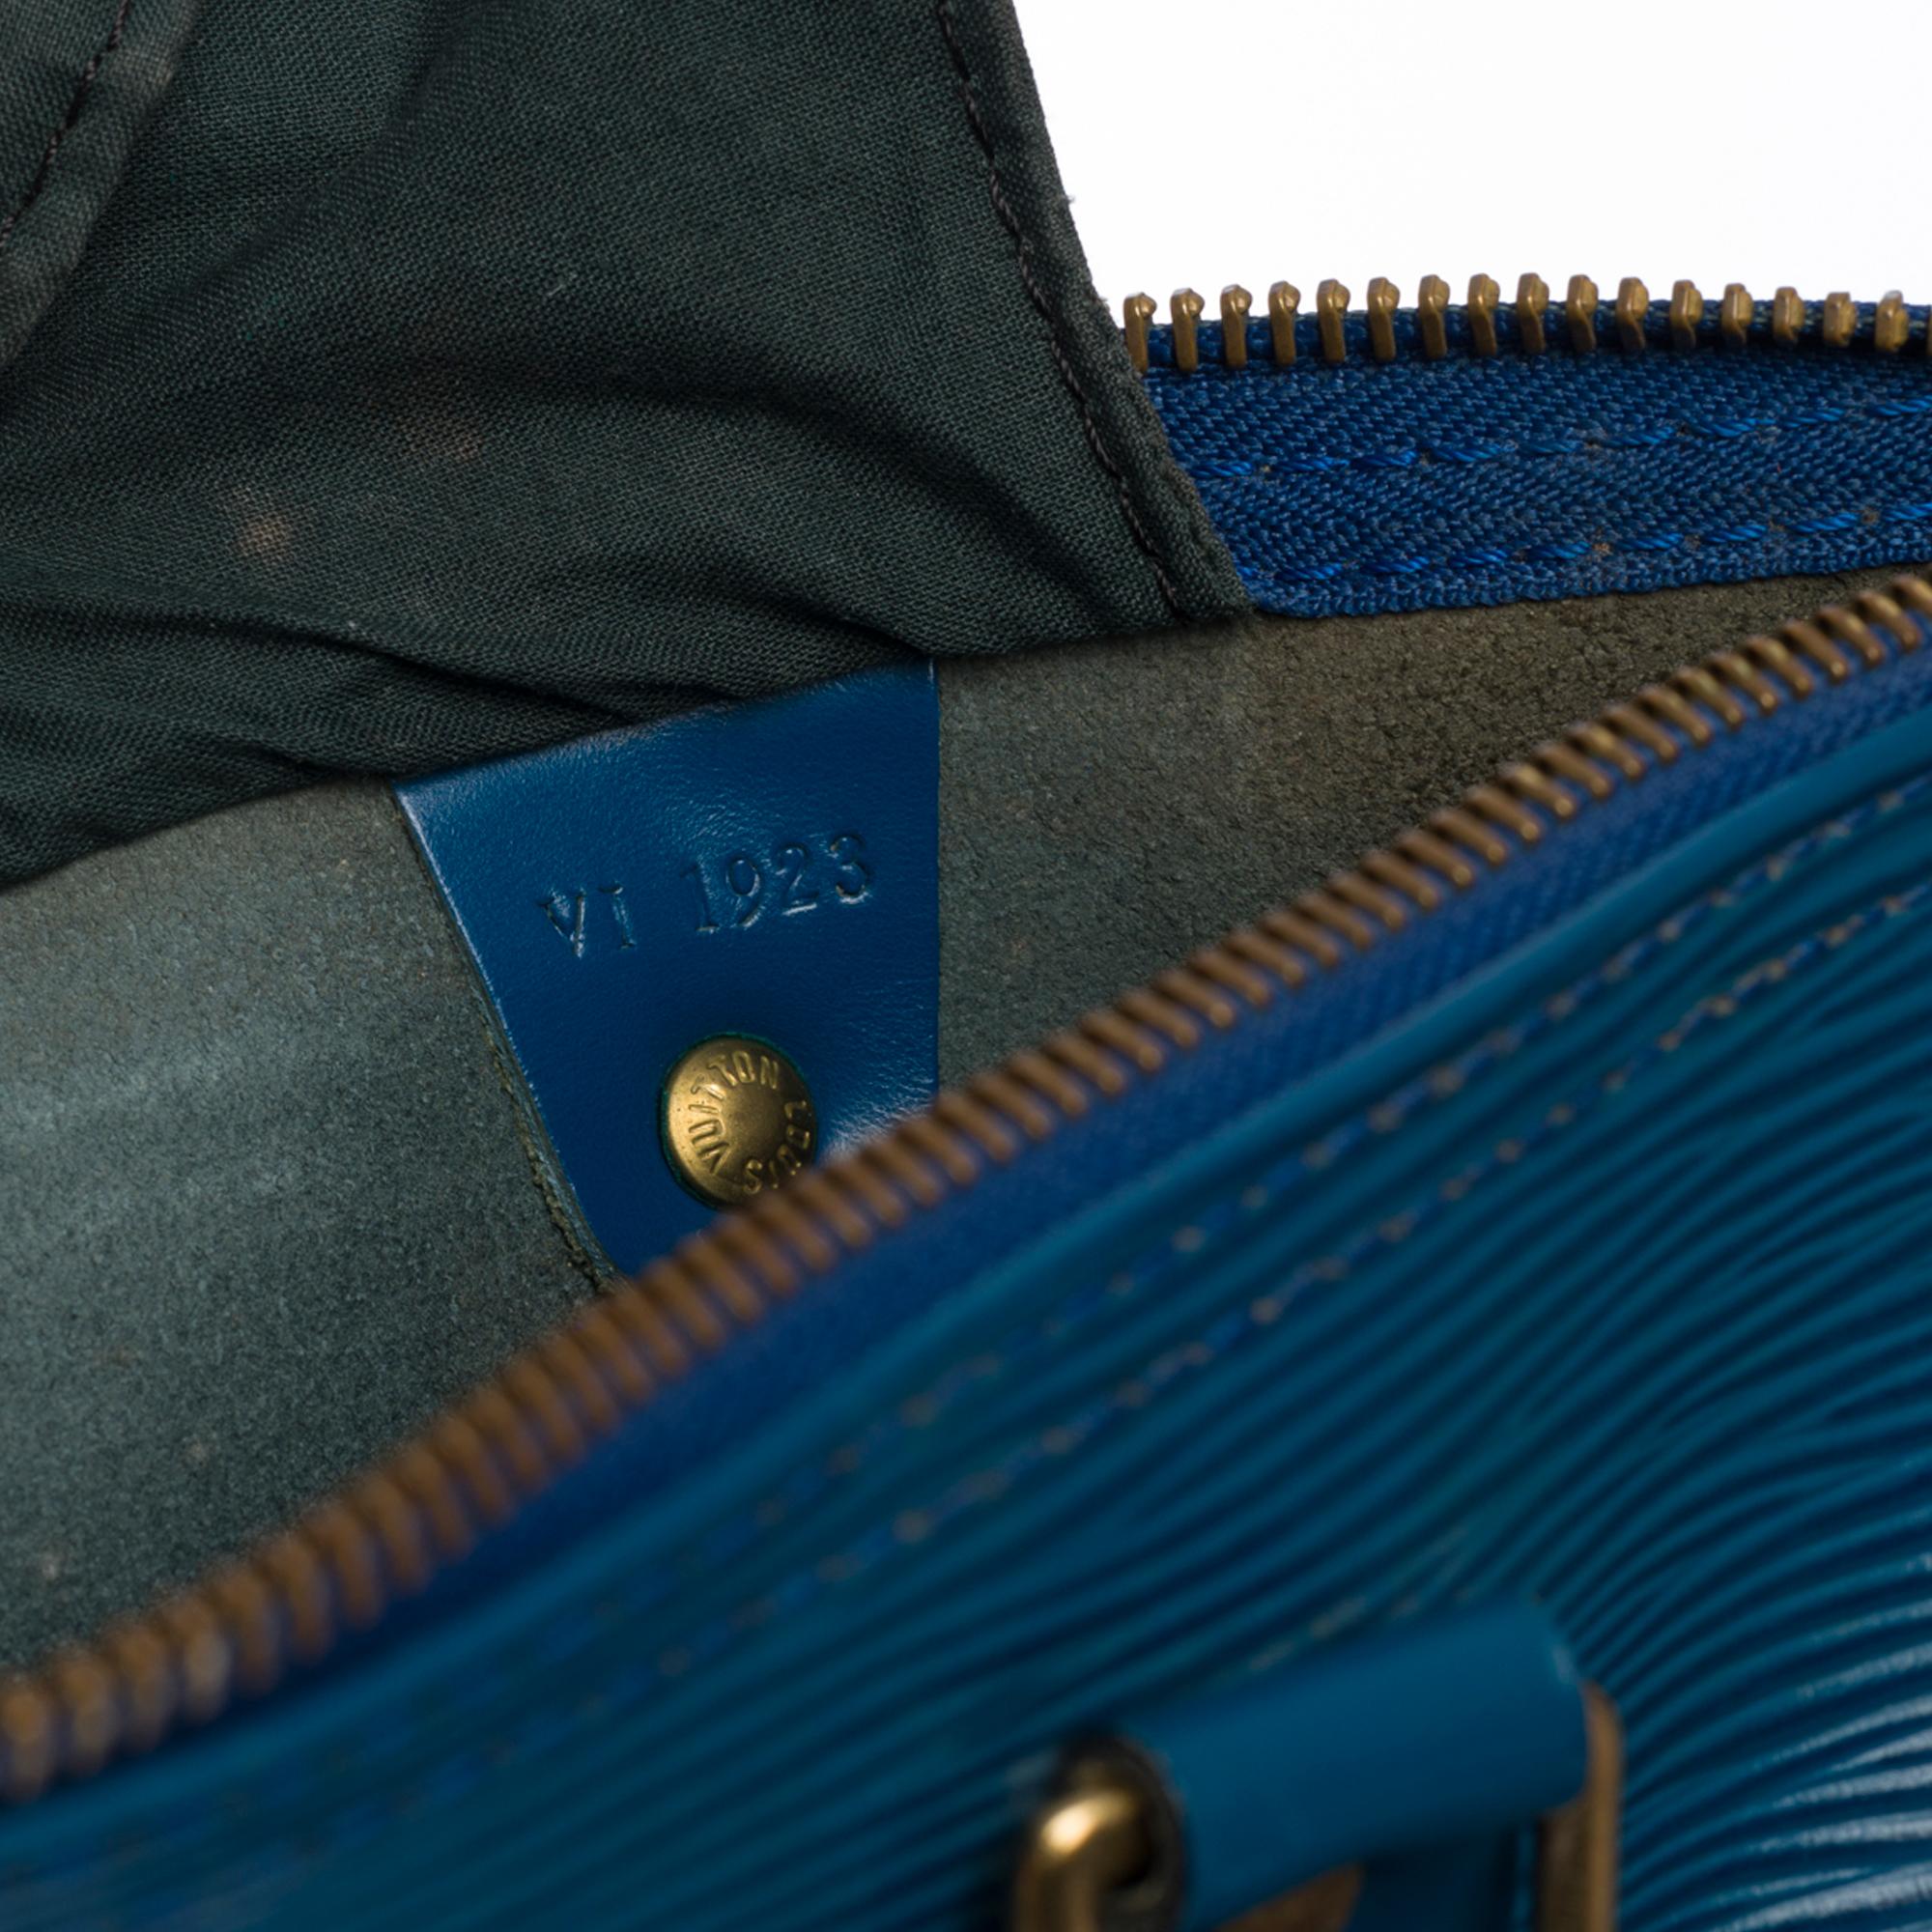 Louis Vuitton Speedy 30 Handtasche aus blauem kobaltfarbenem Pi-Leder und goldenen Beschlägen 1